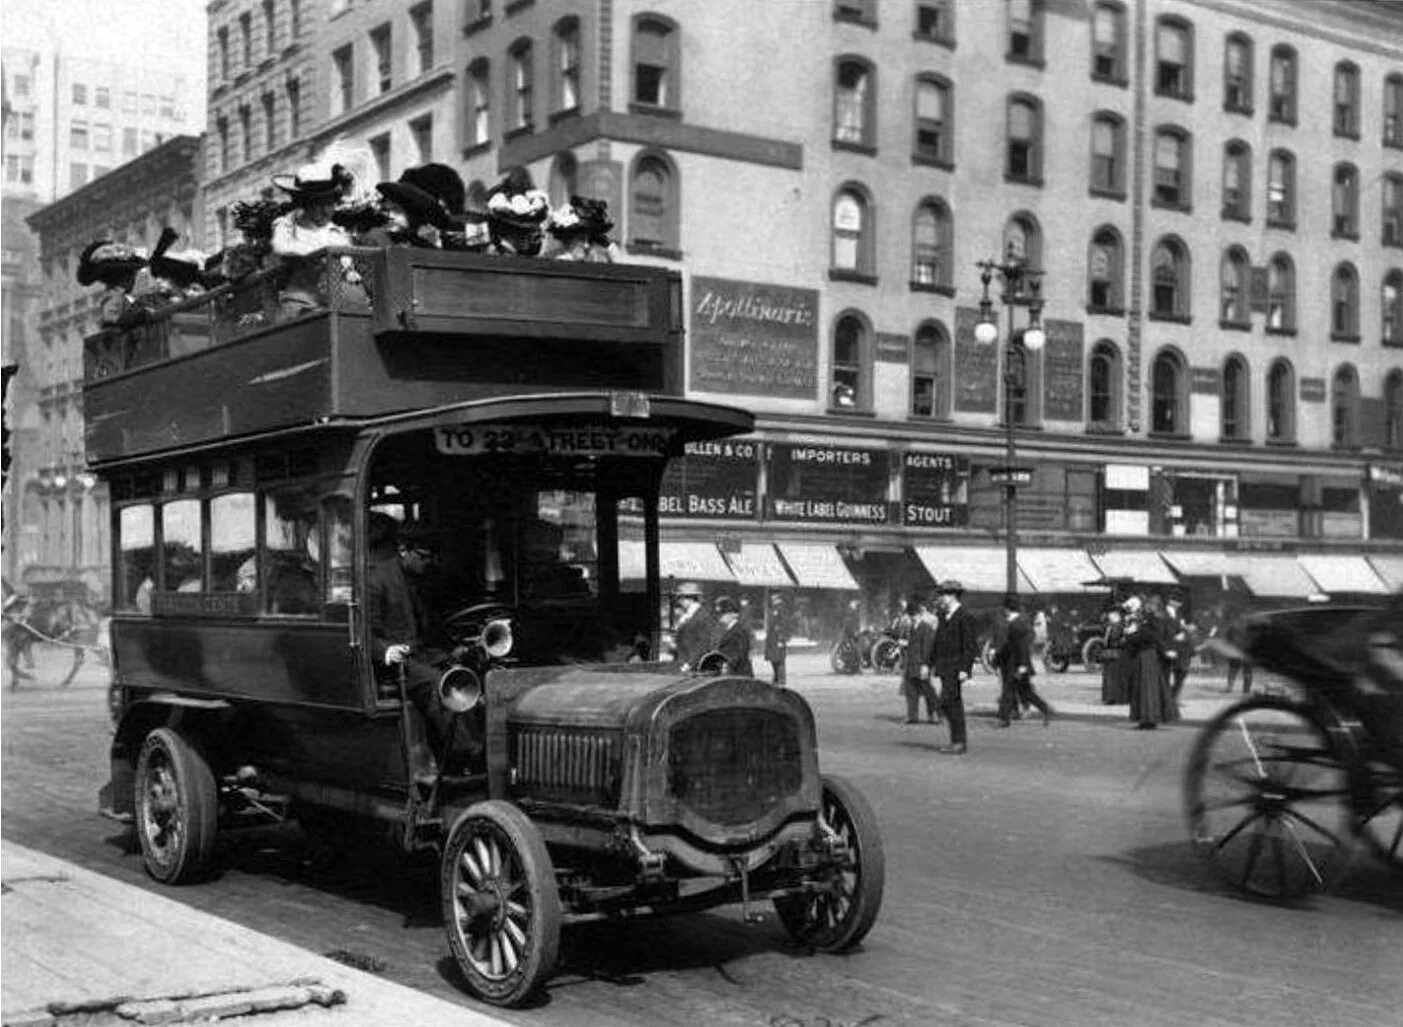 Транспорт вв. Омнибус 19 века США. Нью Йорк 1896 год. Лондон 1912 год. Фото Нью-Йорка 1896г.